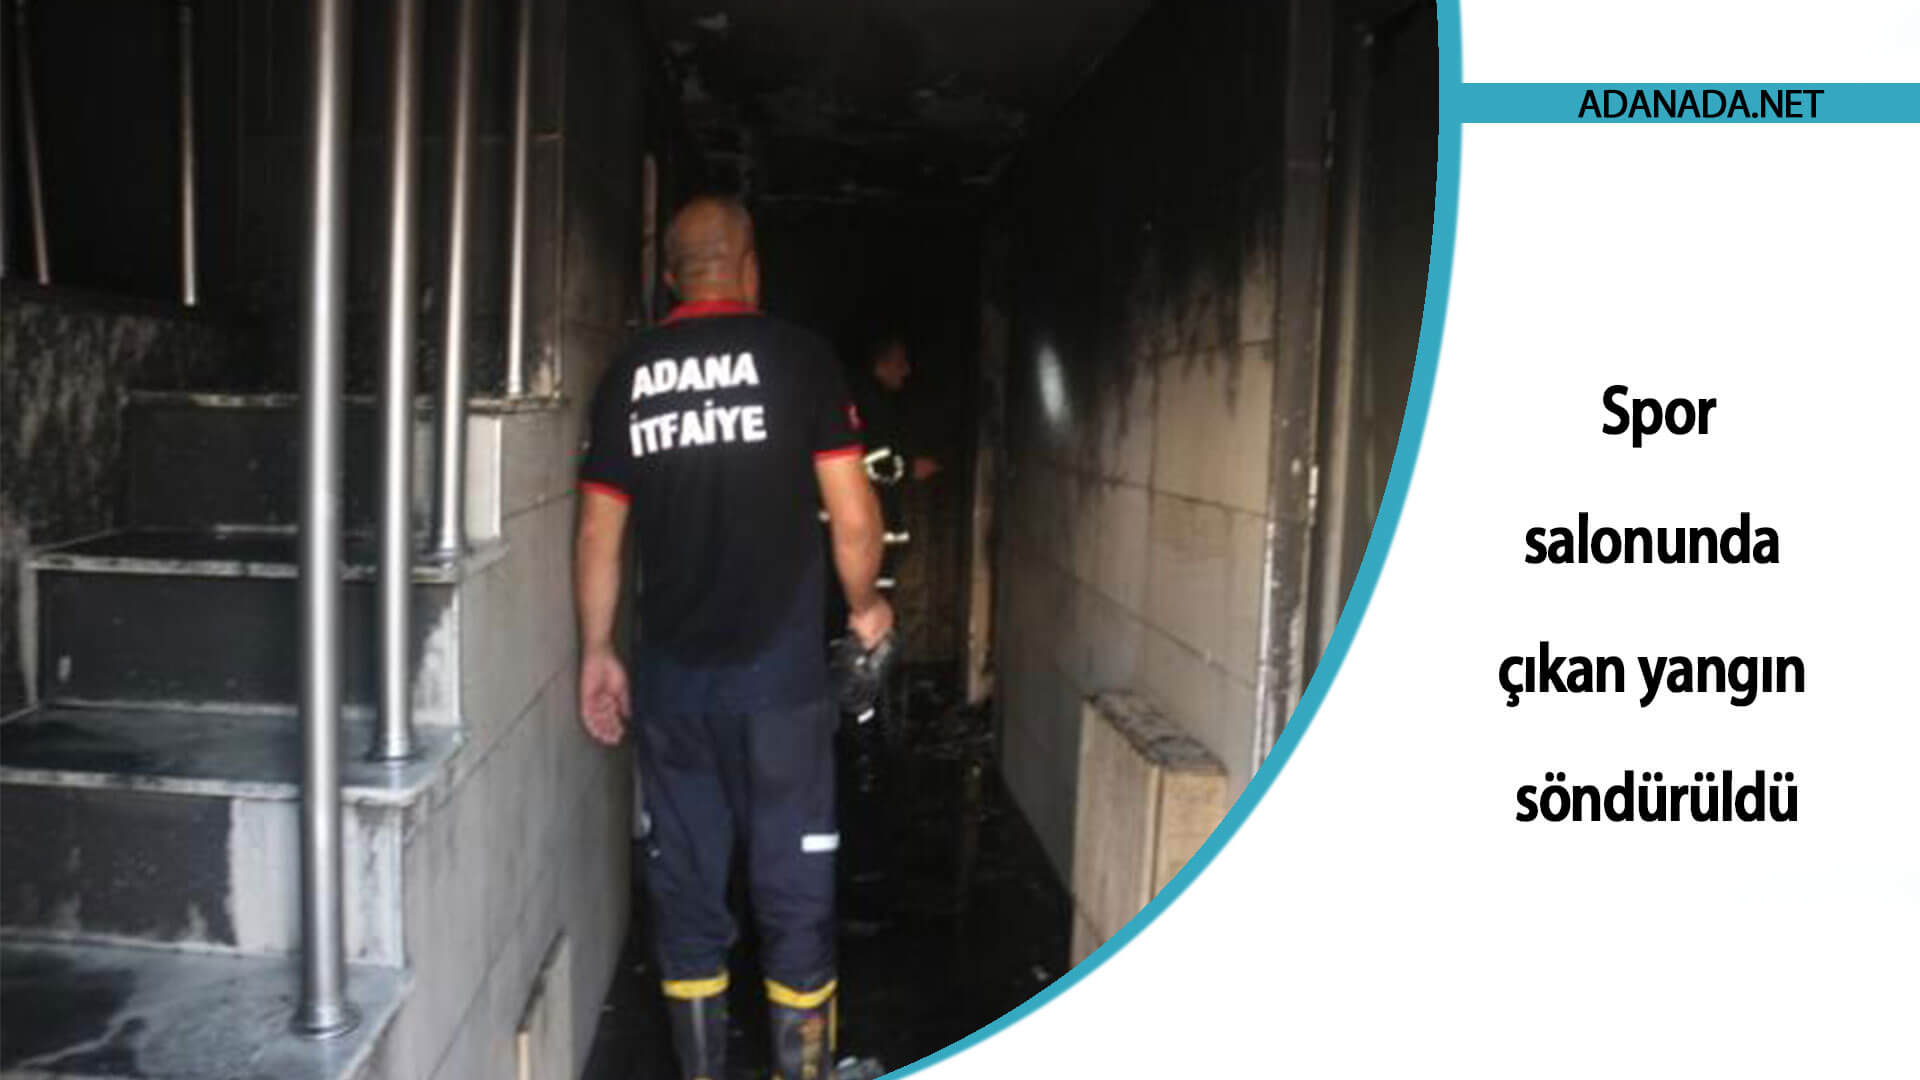 Adana’da spor salonunda çıkan yangın söndürüldü